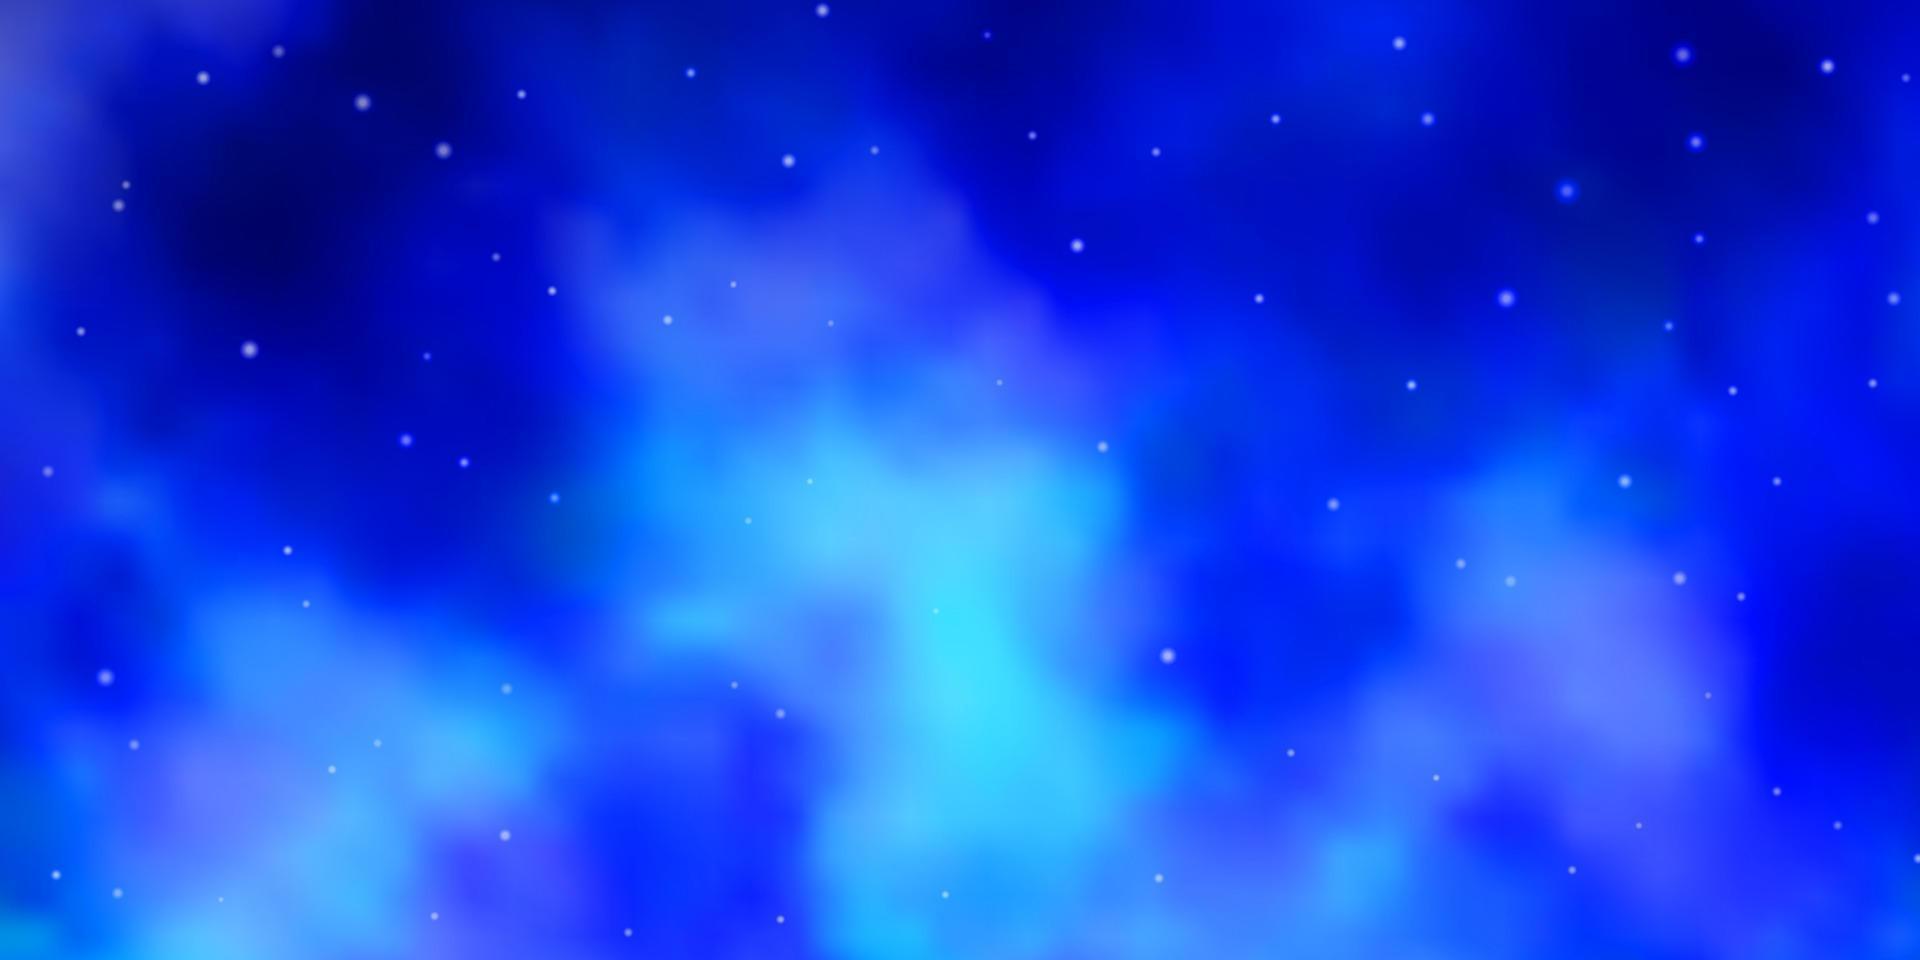 modello vettoriale azzurro con stelle al neon.